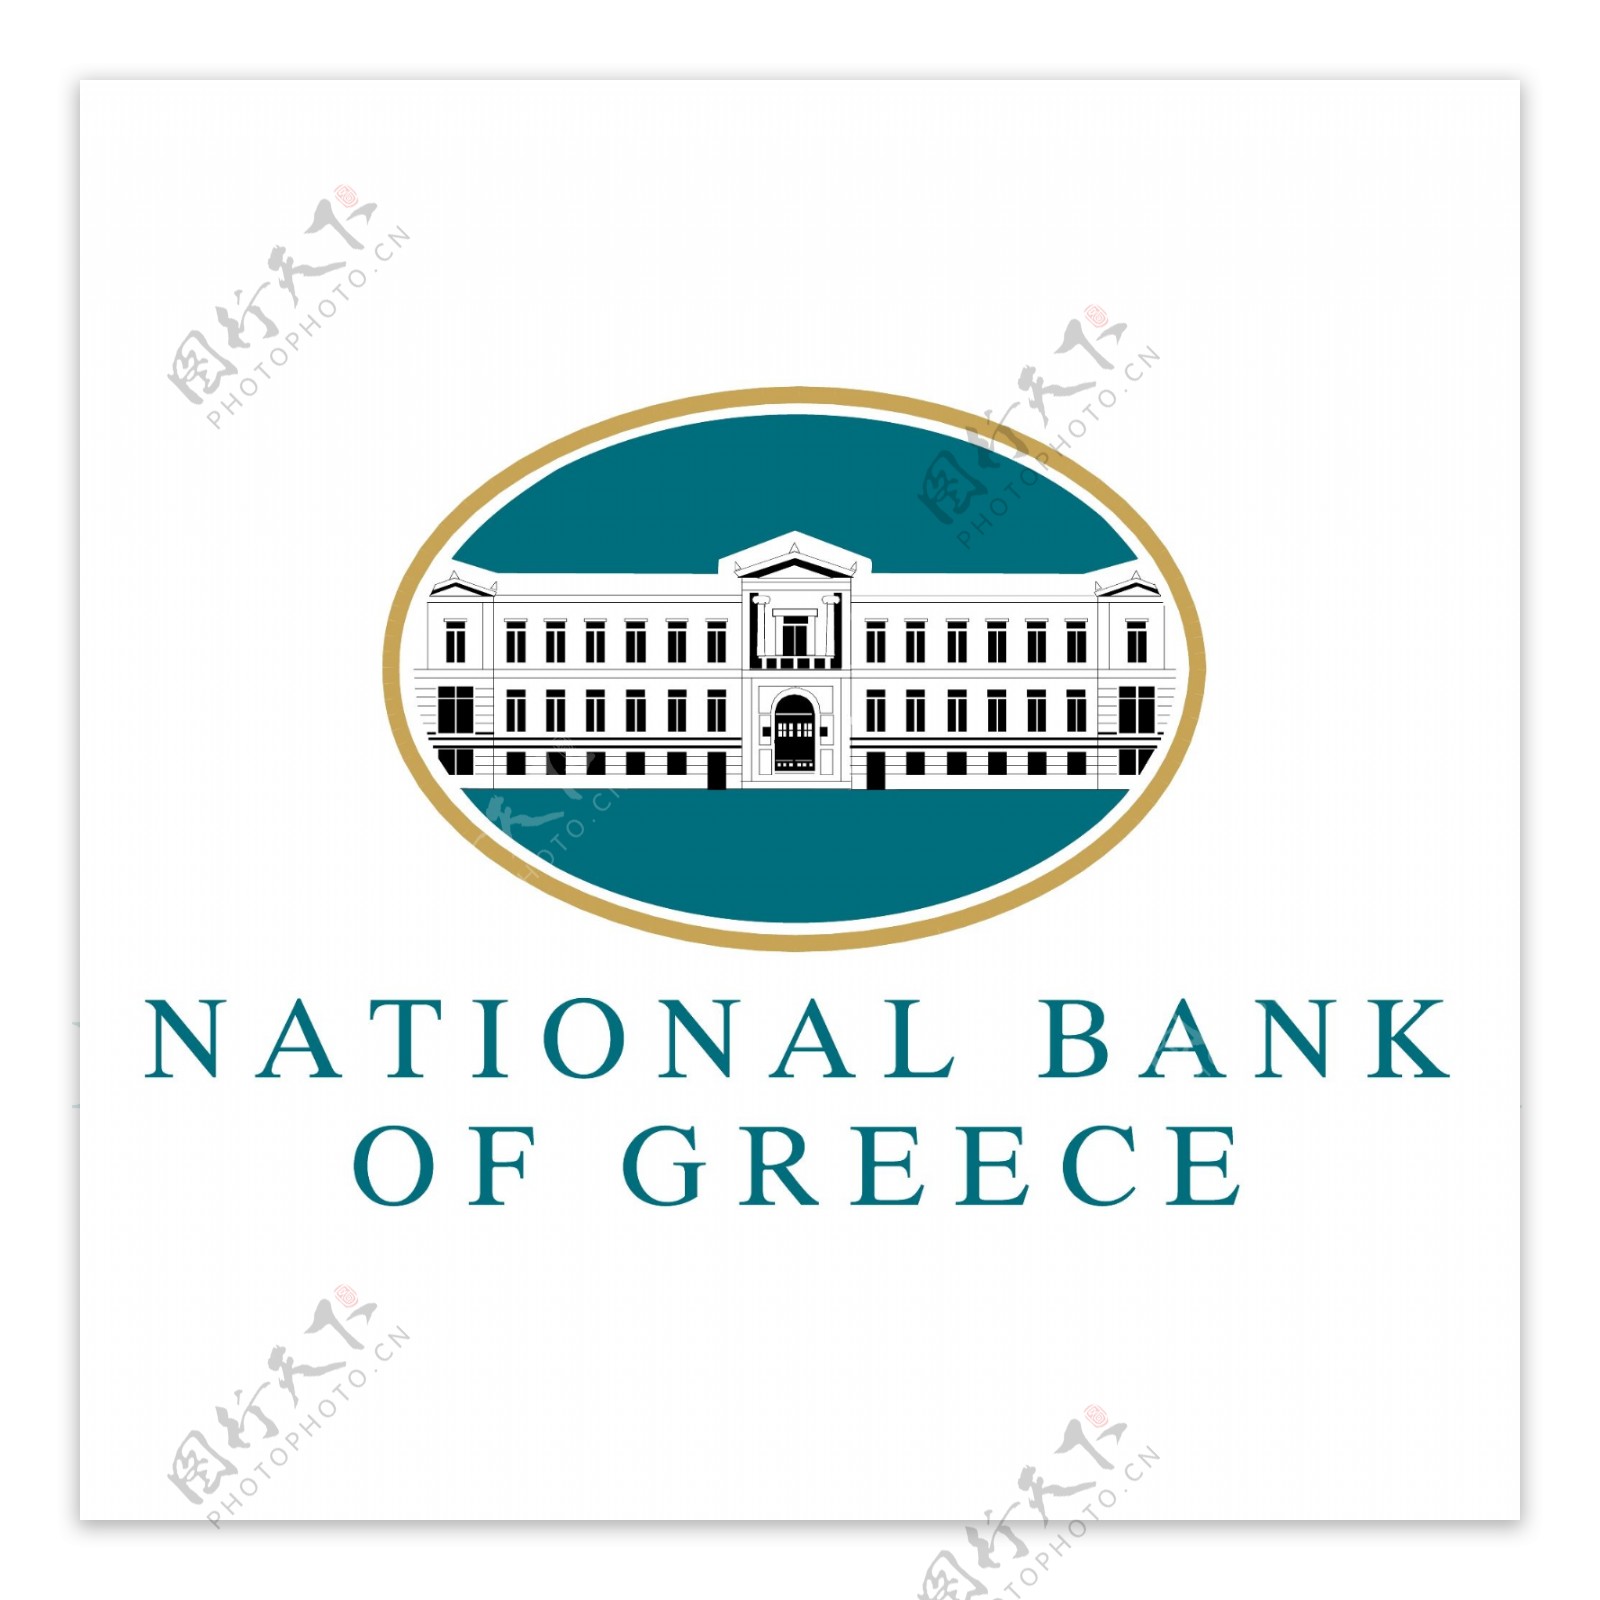 希腊国民银行